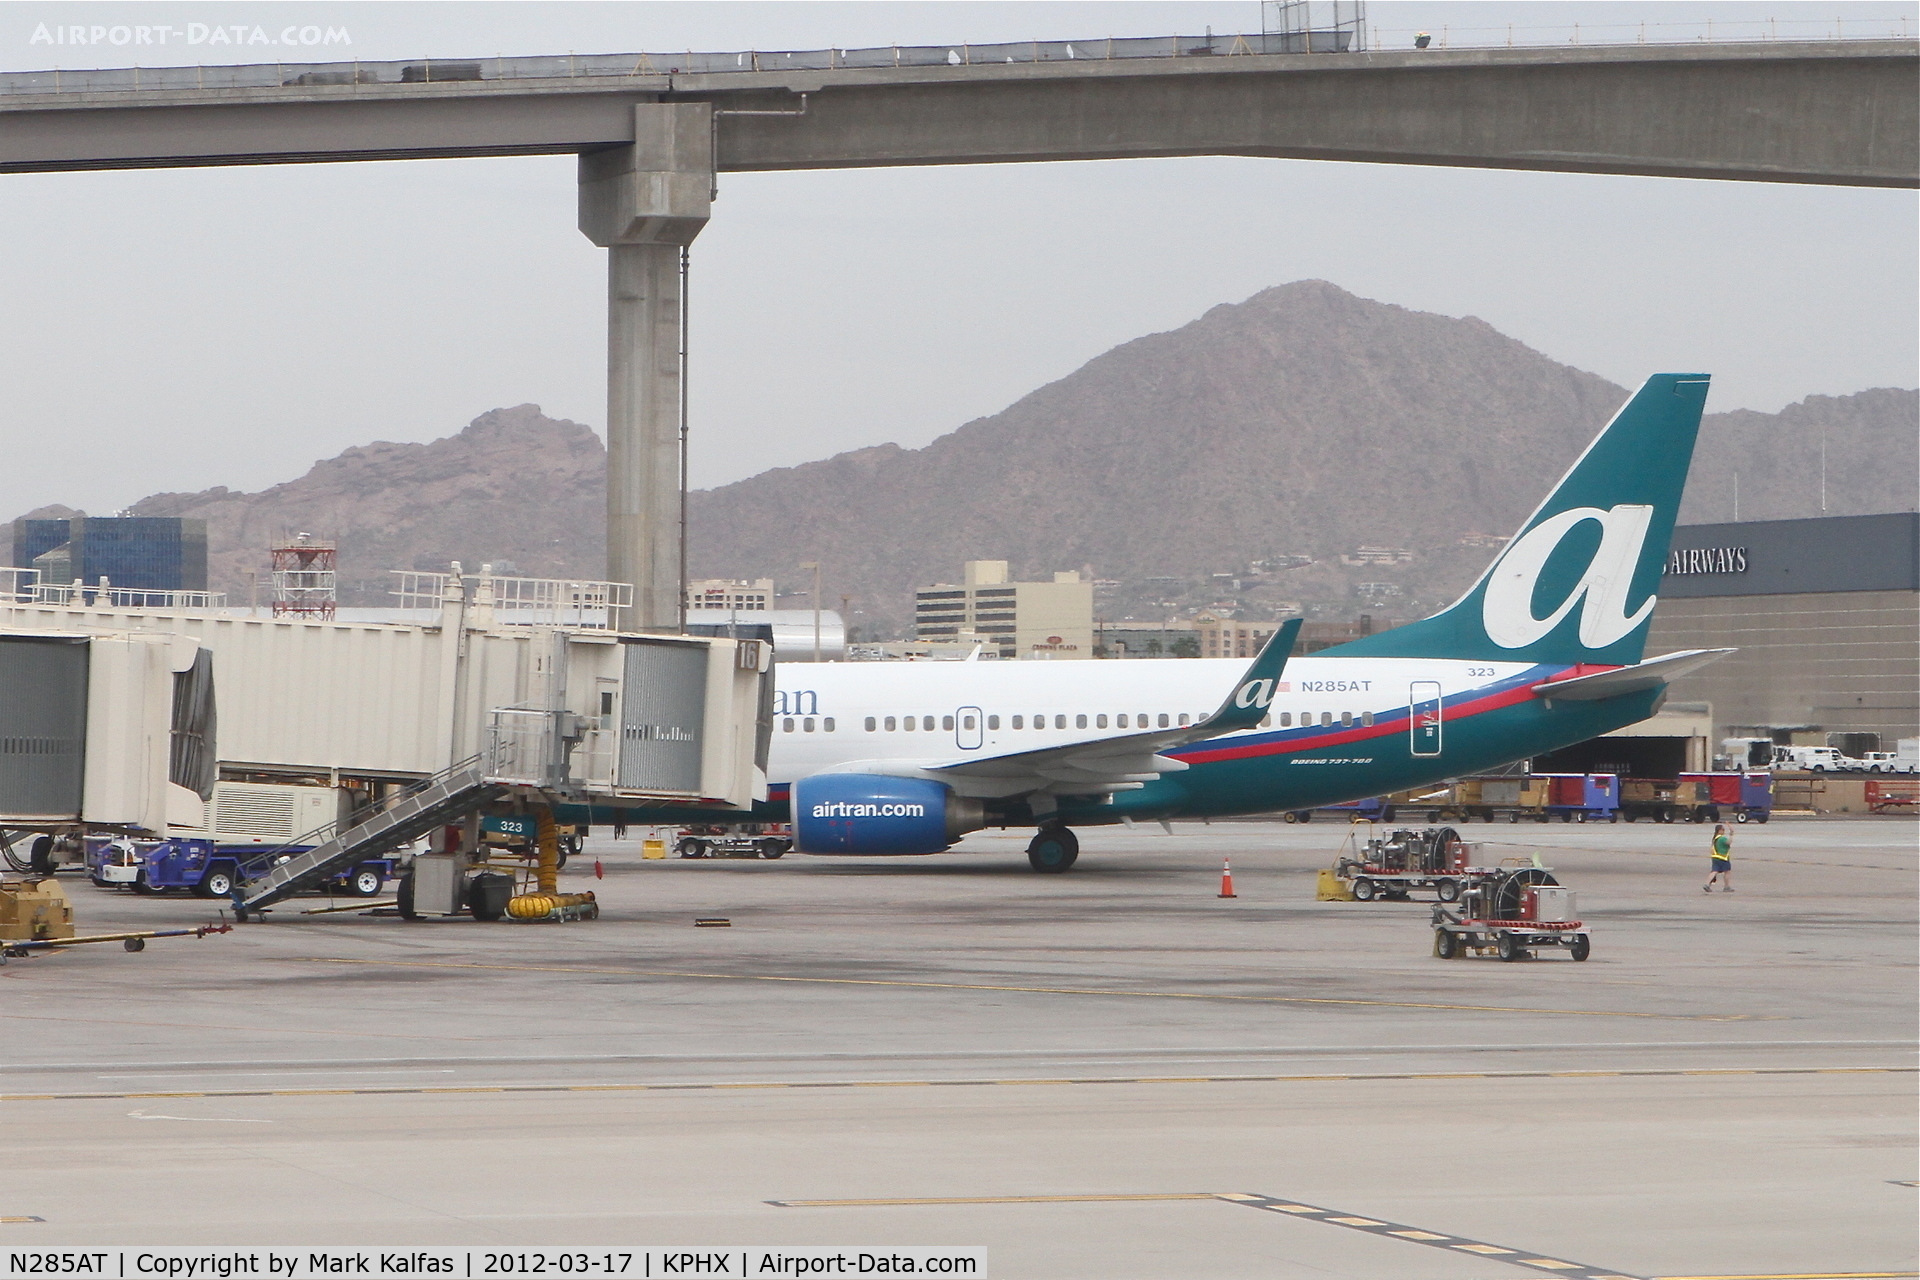 N285AT, 2006 Boeing 737-76N C/N 32670, AirTran Boeing 737-76N, N285AT at Gate C14, Terminal 4 Phoenix Sky Harbor.